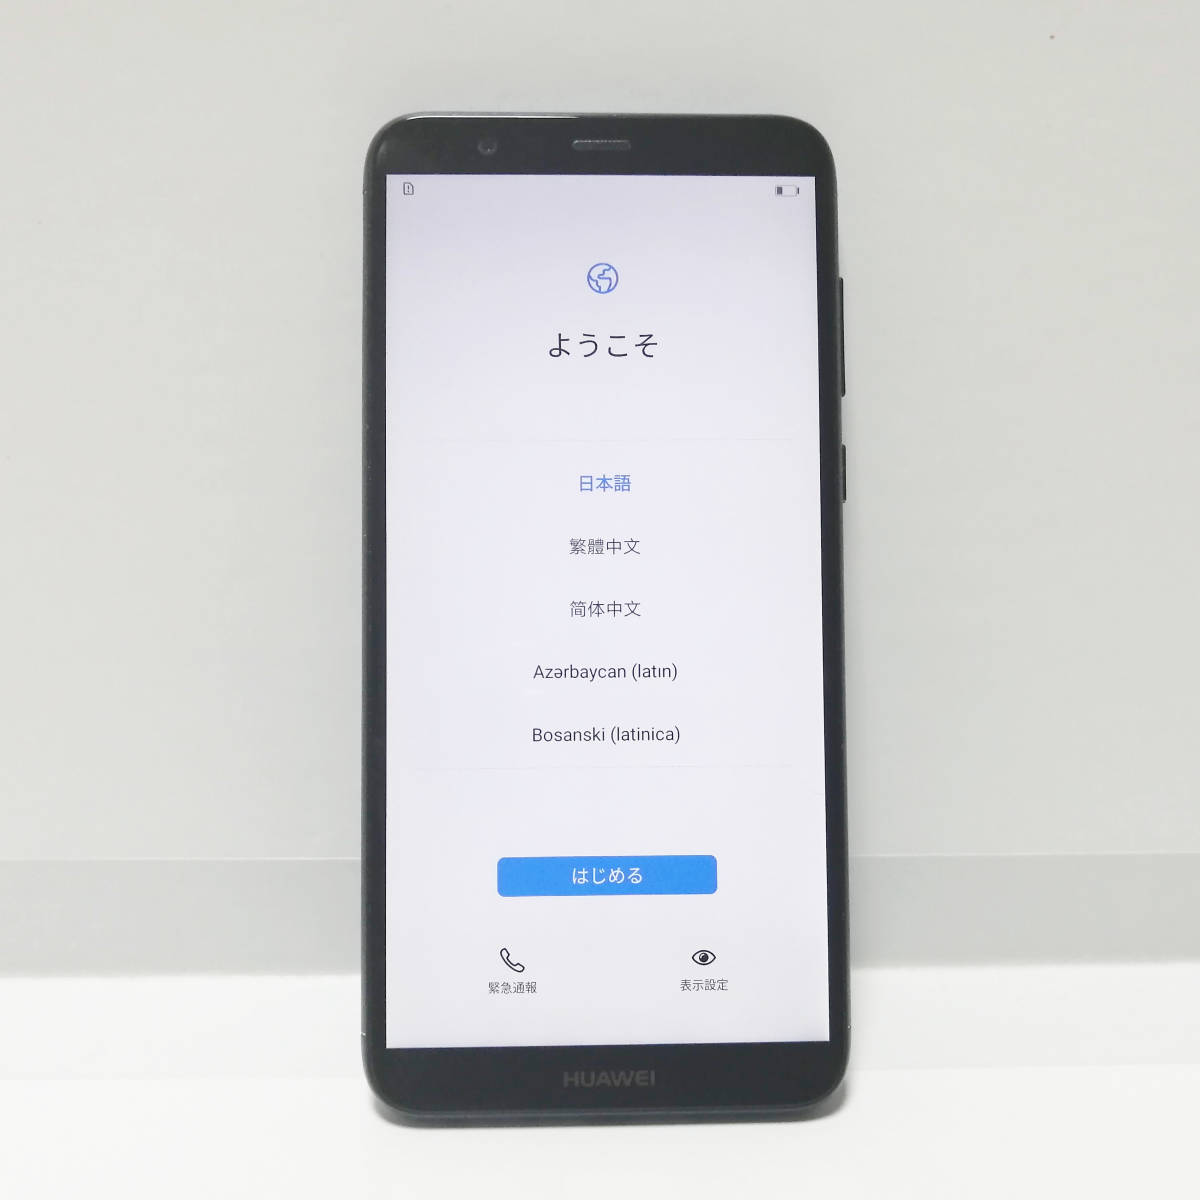 Huawei P Lite Simフリー 本体のみ ファーウェイ スマートフォン Android 品 Android 売買されたオークション情報 Yahooの商品情報をアーカイブ公開 オークファン Aucfan Com